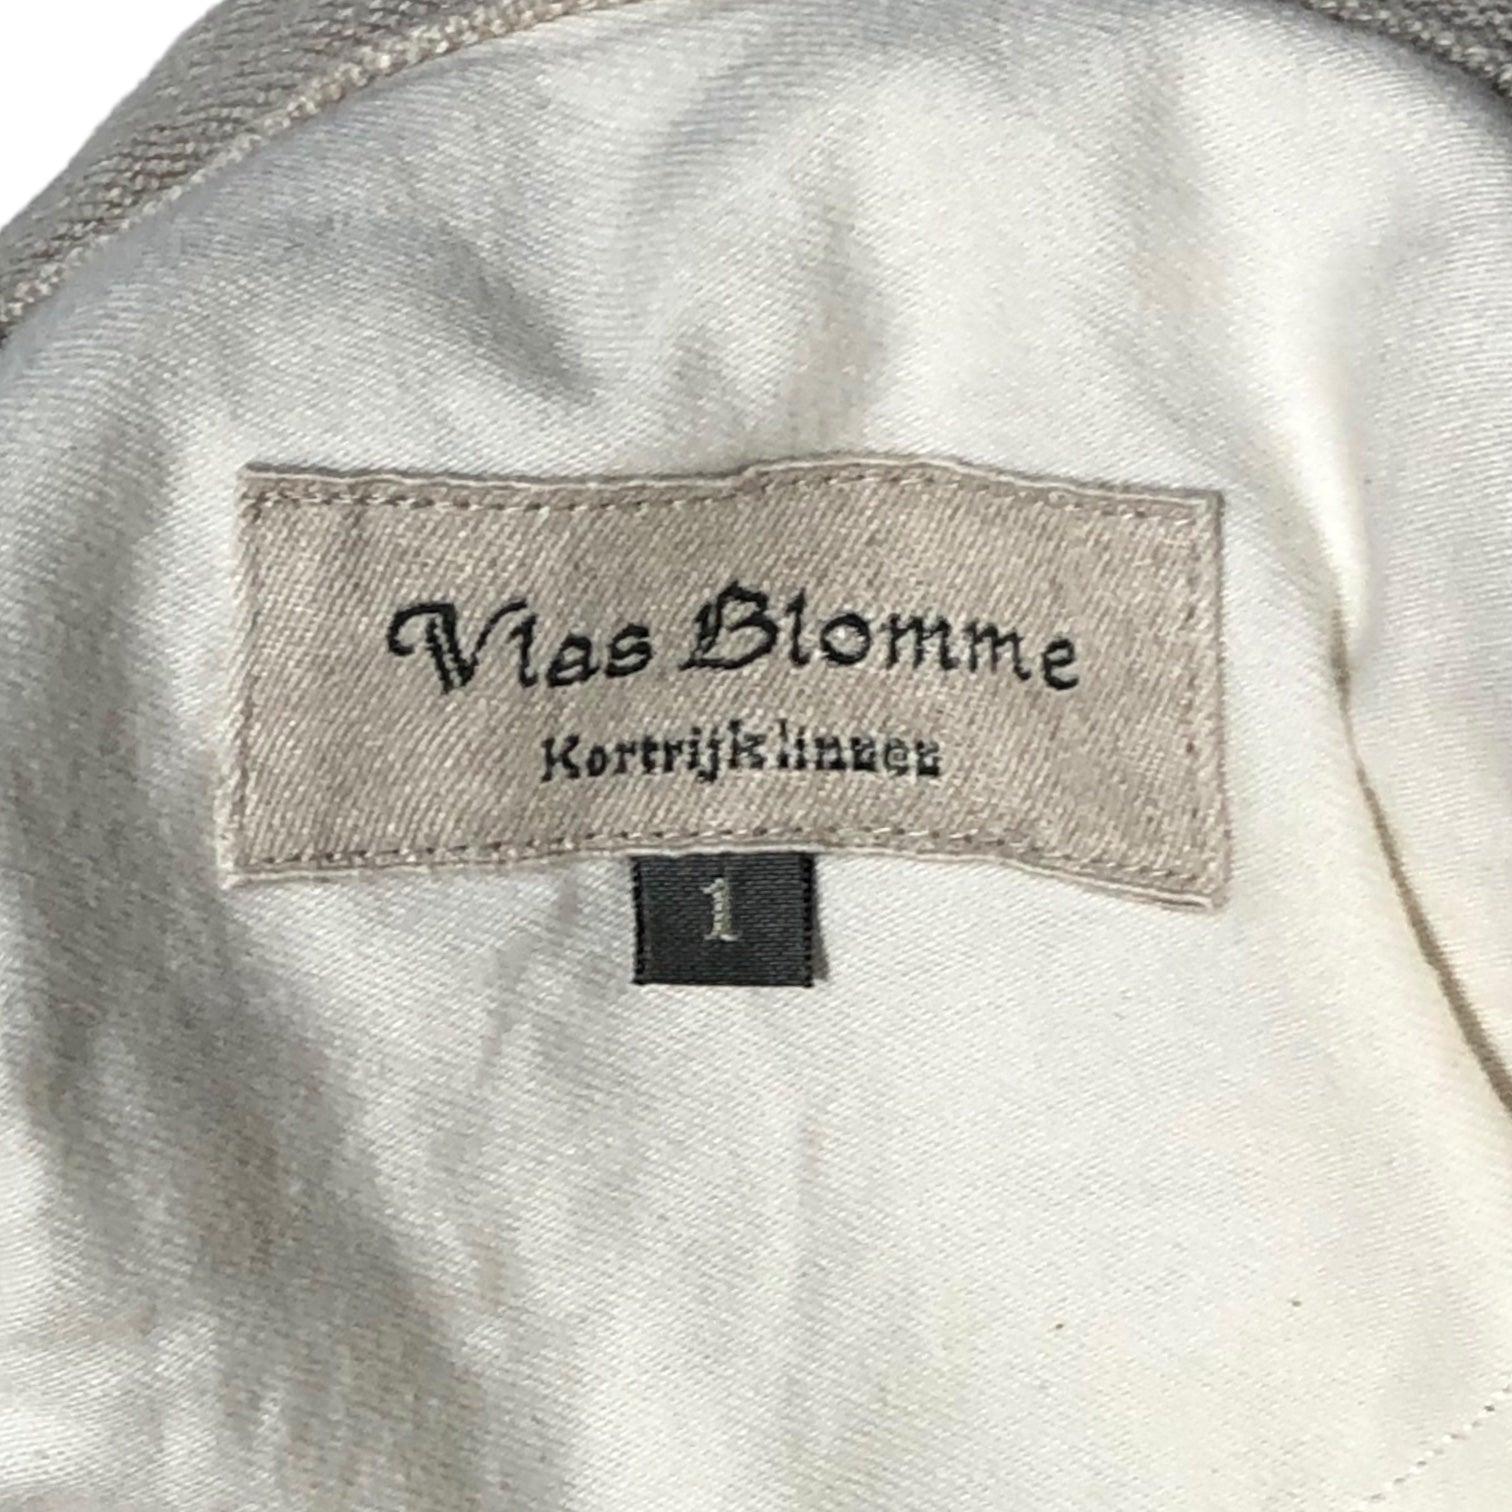 Vlas Blomme(ヴラスブラム) linen pants コルト パンツ コルトレイクリネン 133041 1(S) ベージュ